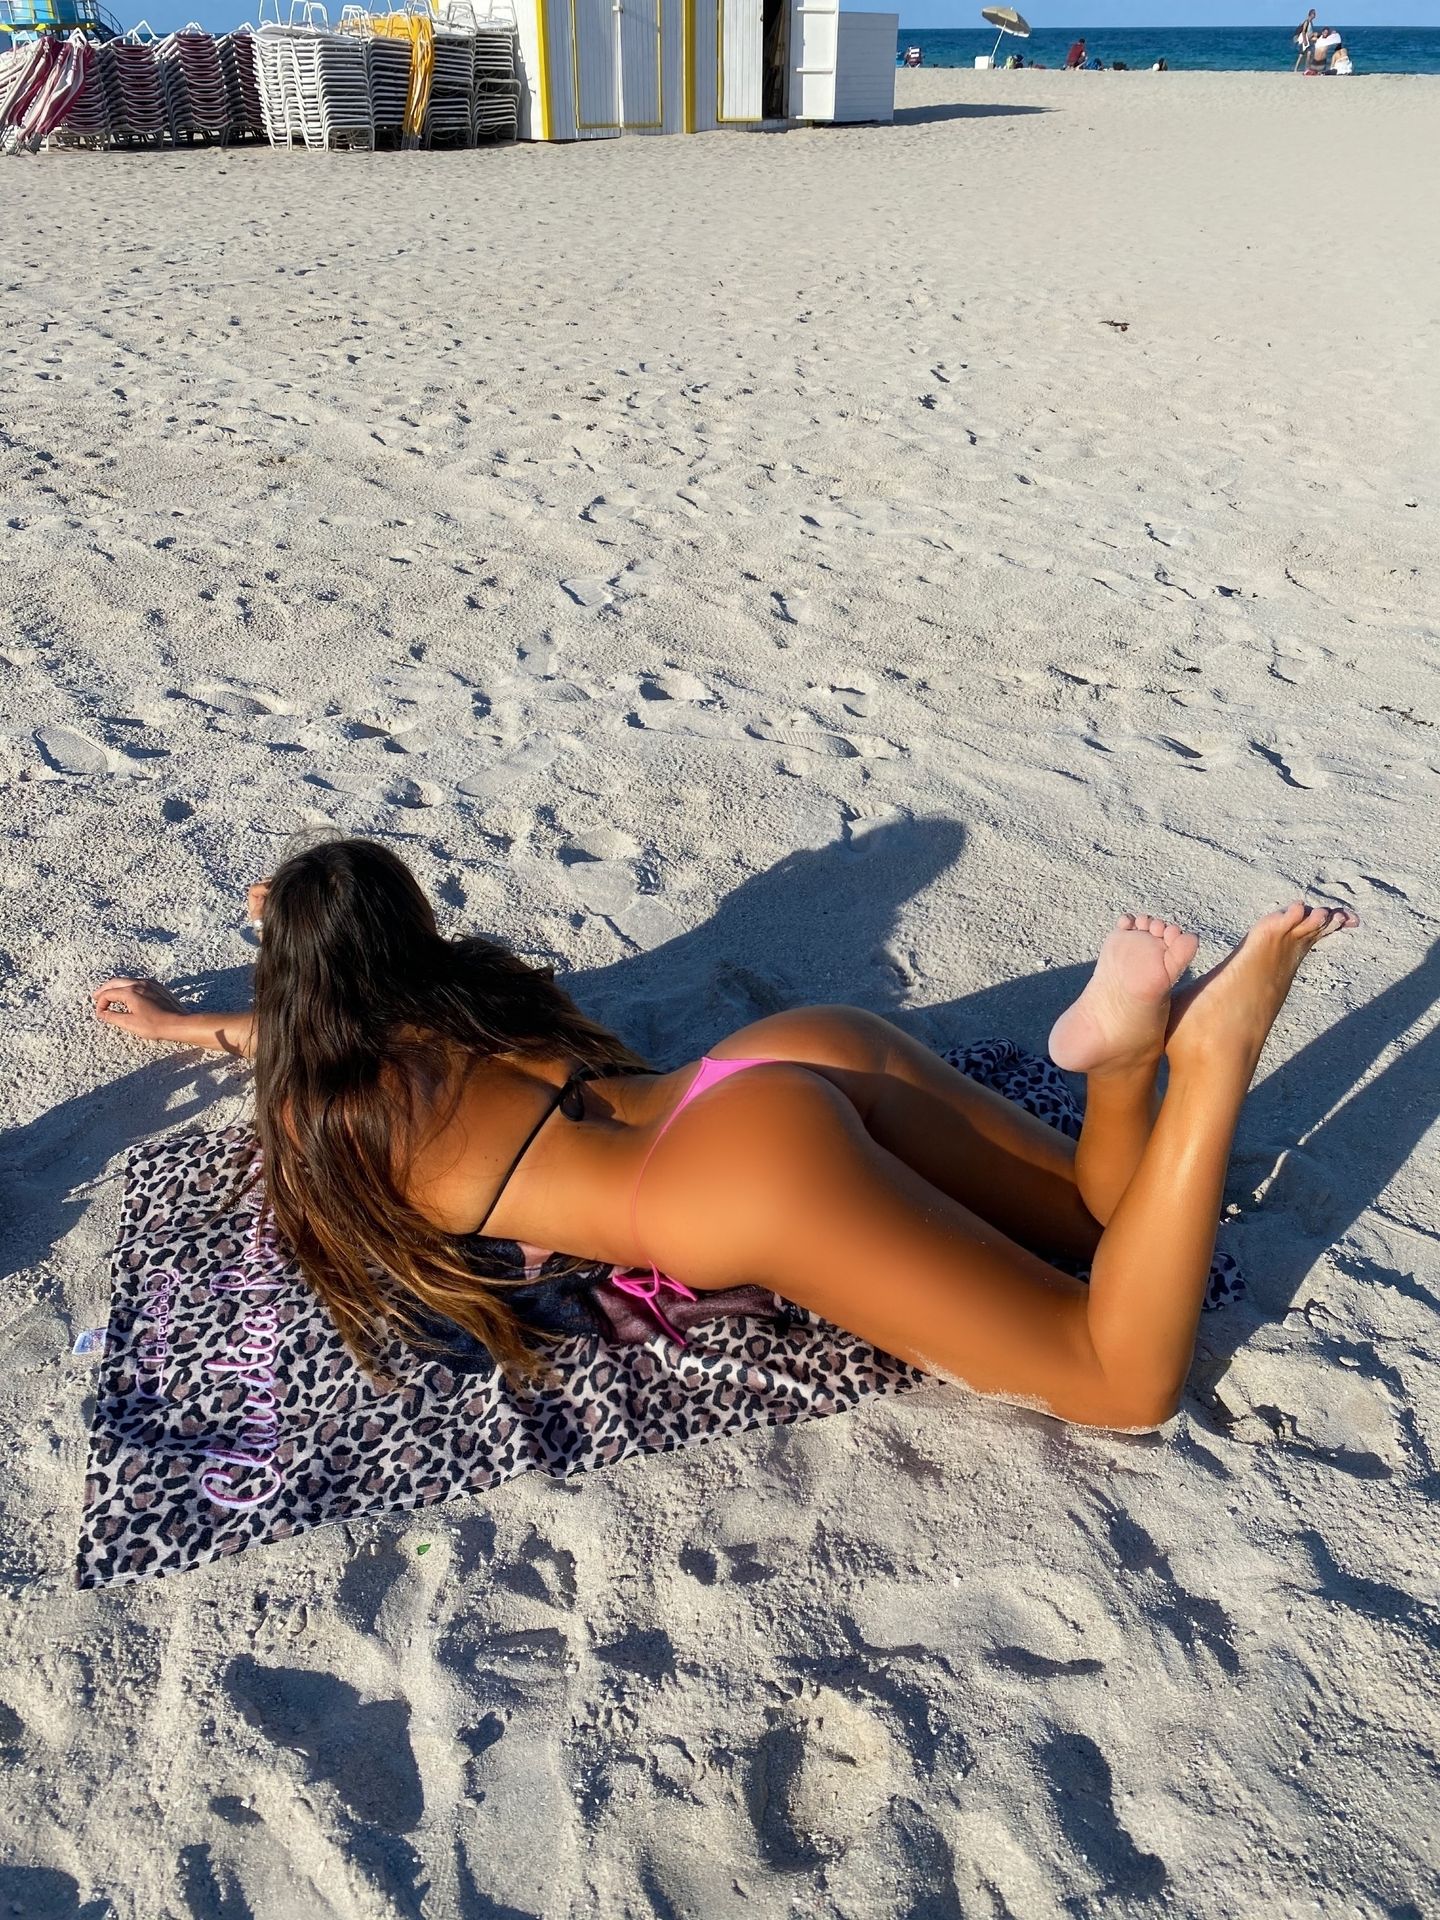 Claudia Romani Models for Miami Problems in Miami Beach (10 Photos)